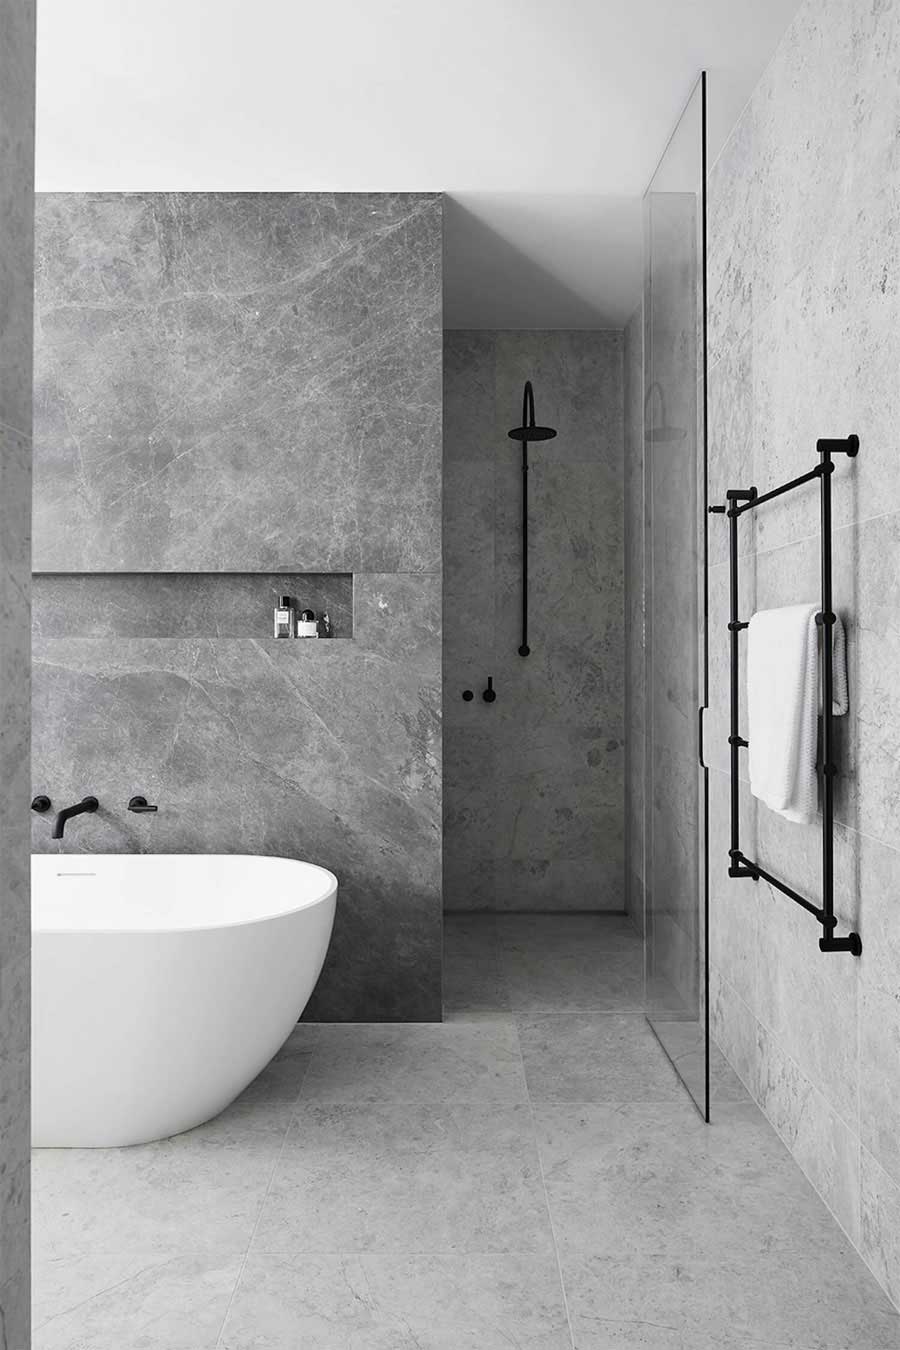 Adolescent Makkelijker maken Een hekel hebben aan 24 ideeën over Badkamer | badkamer, badkamer modern, design badkamer